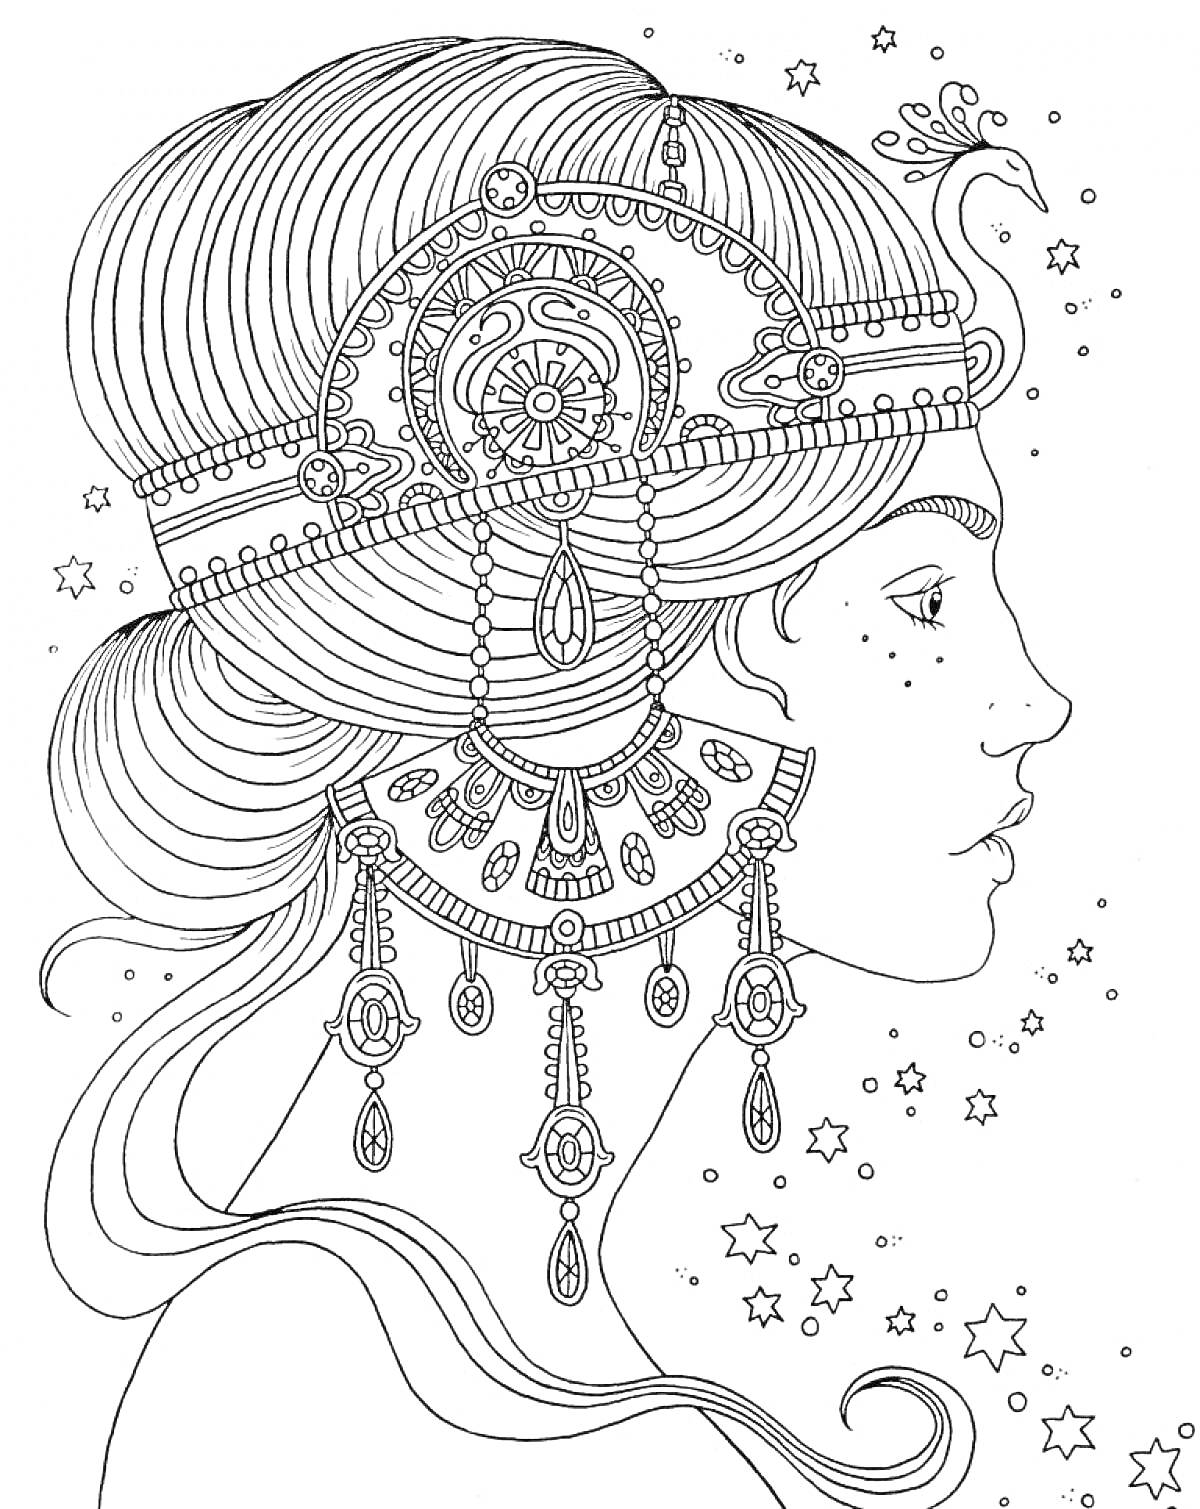 Раскраска Портрет женщины с массивным украшением на голове и серьгами, окружённая звёздами